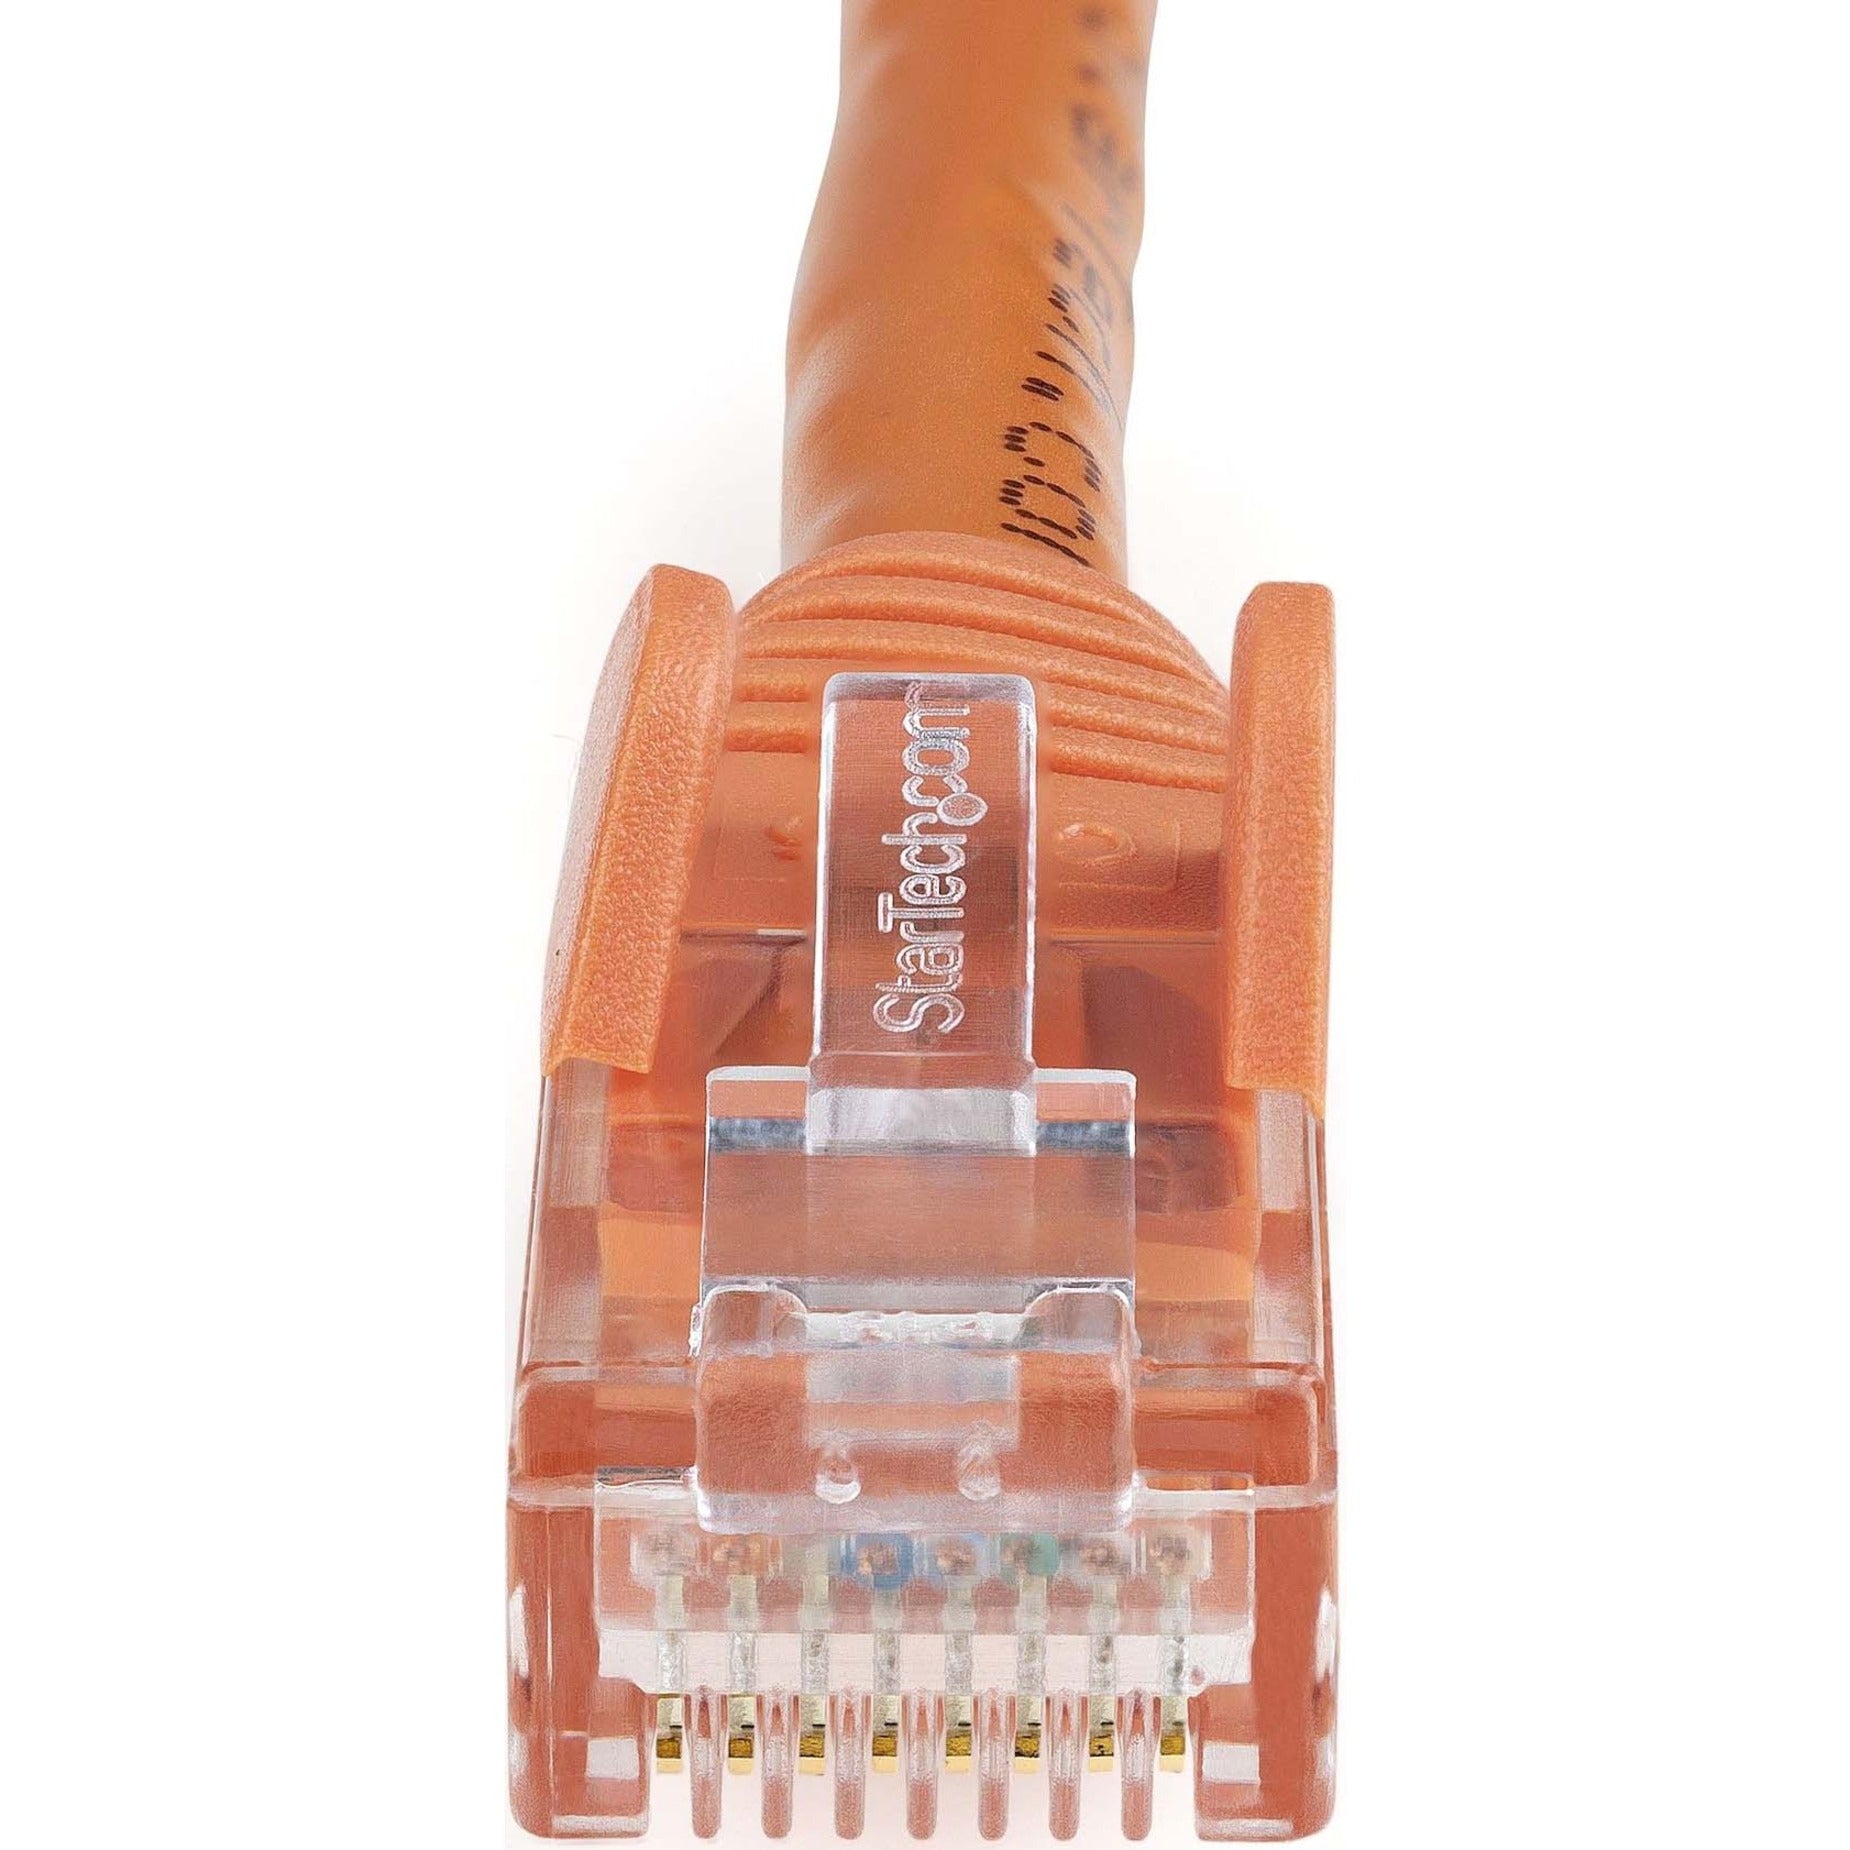 StarTech.com N6PATCH4OR Cat.6 Patch Kabel 4ft Orange Ethernet Kabel Snagless RJ45 Steckverbinder